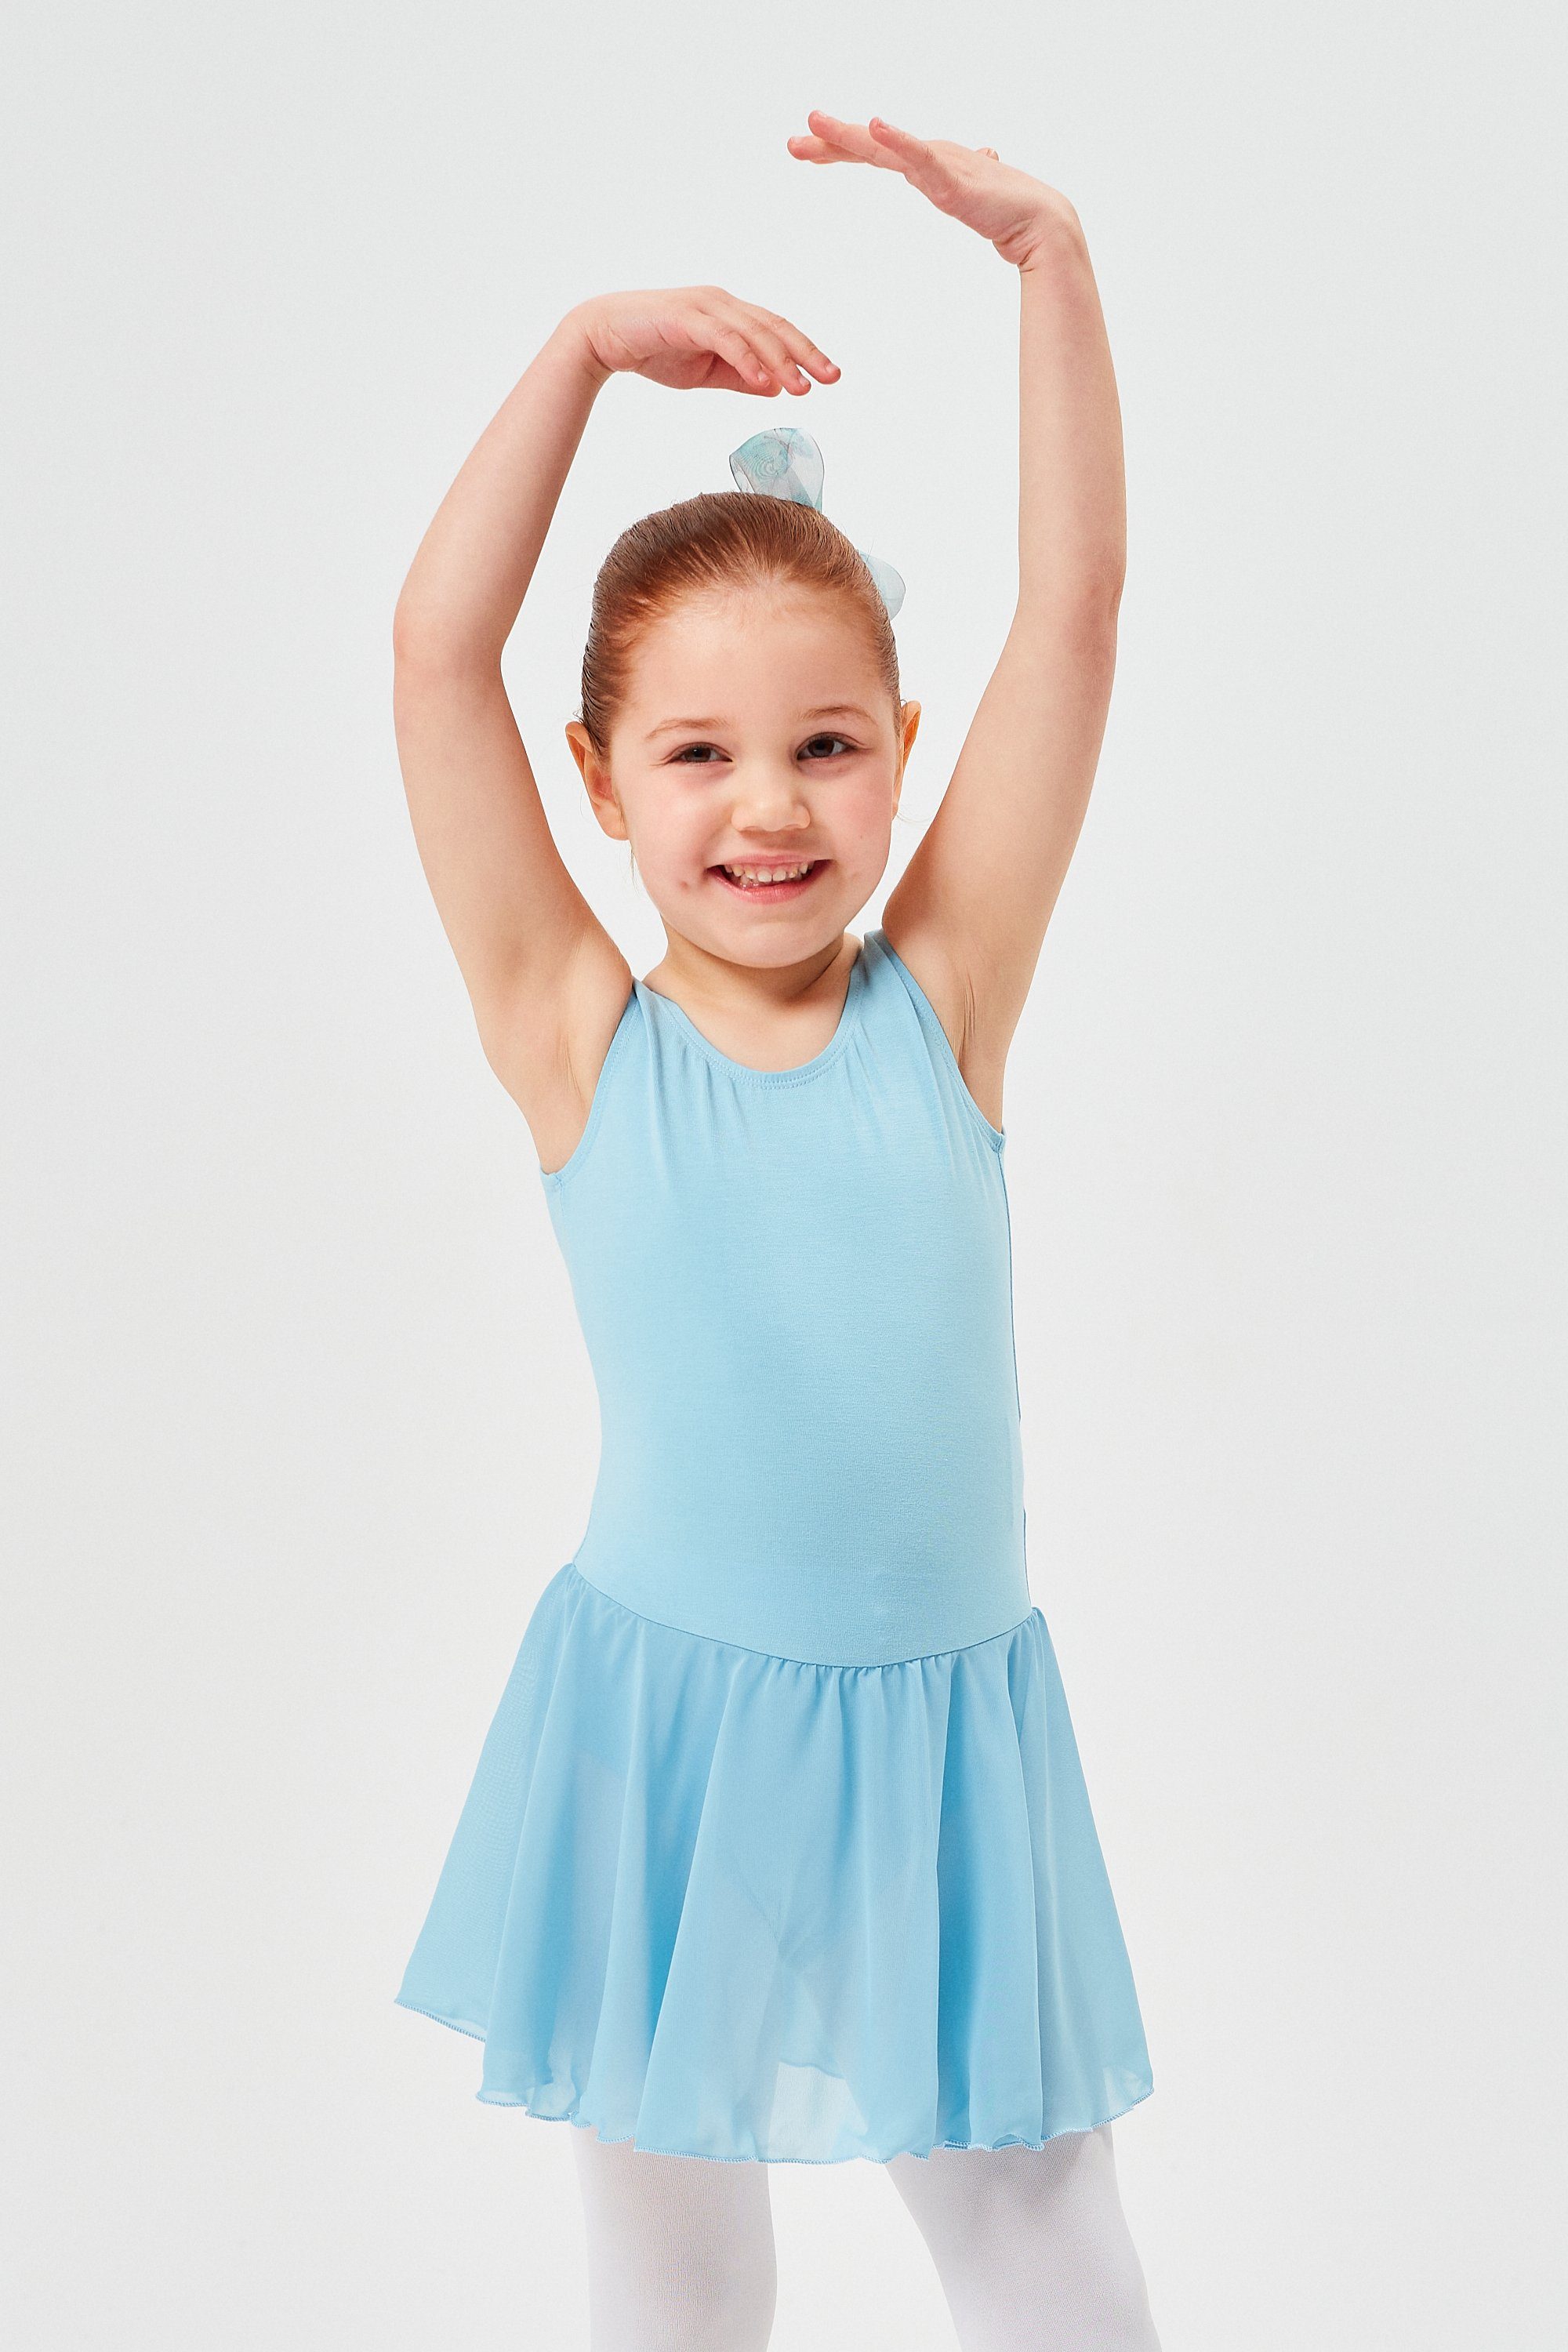 tanzmuster Chiffonkleid Ballett Trikot Minnie mit Chiffon Röckchen Ballettkleid für Mädchen aus wunderbar weichem Baumwollmaterial hellblau